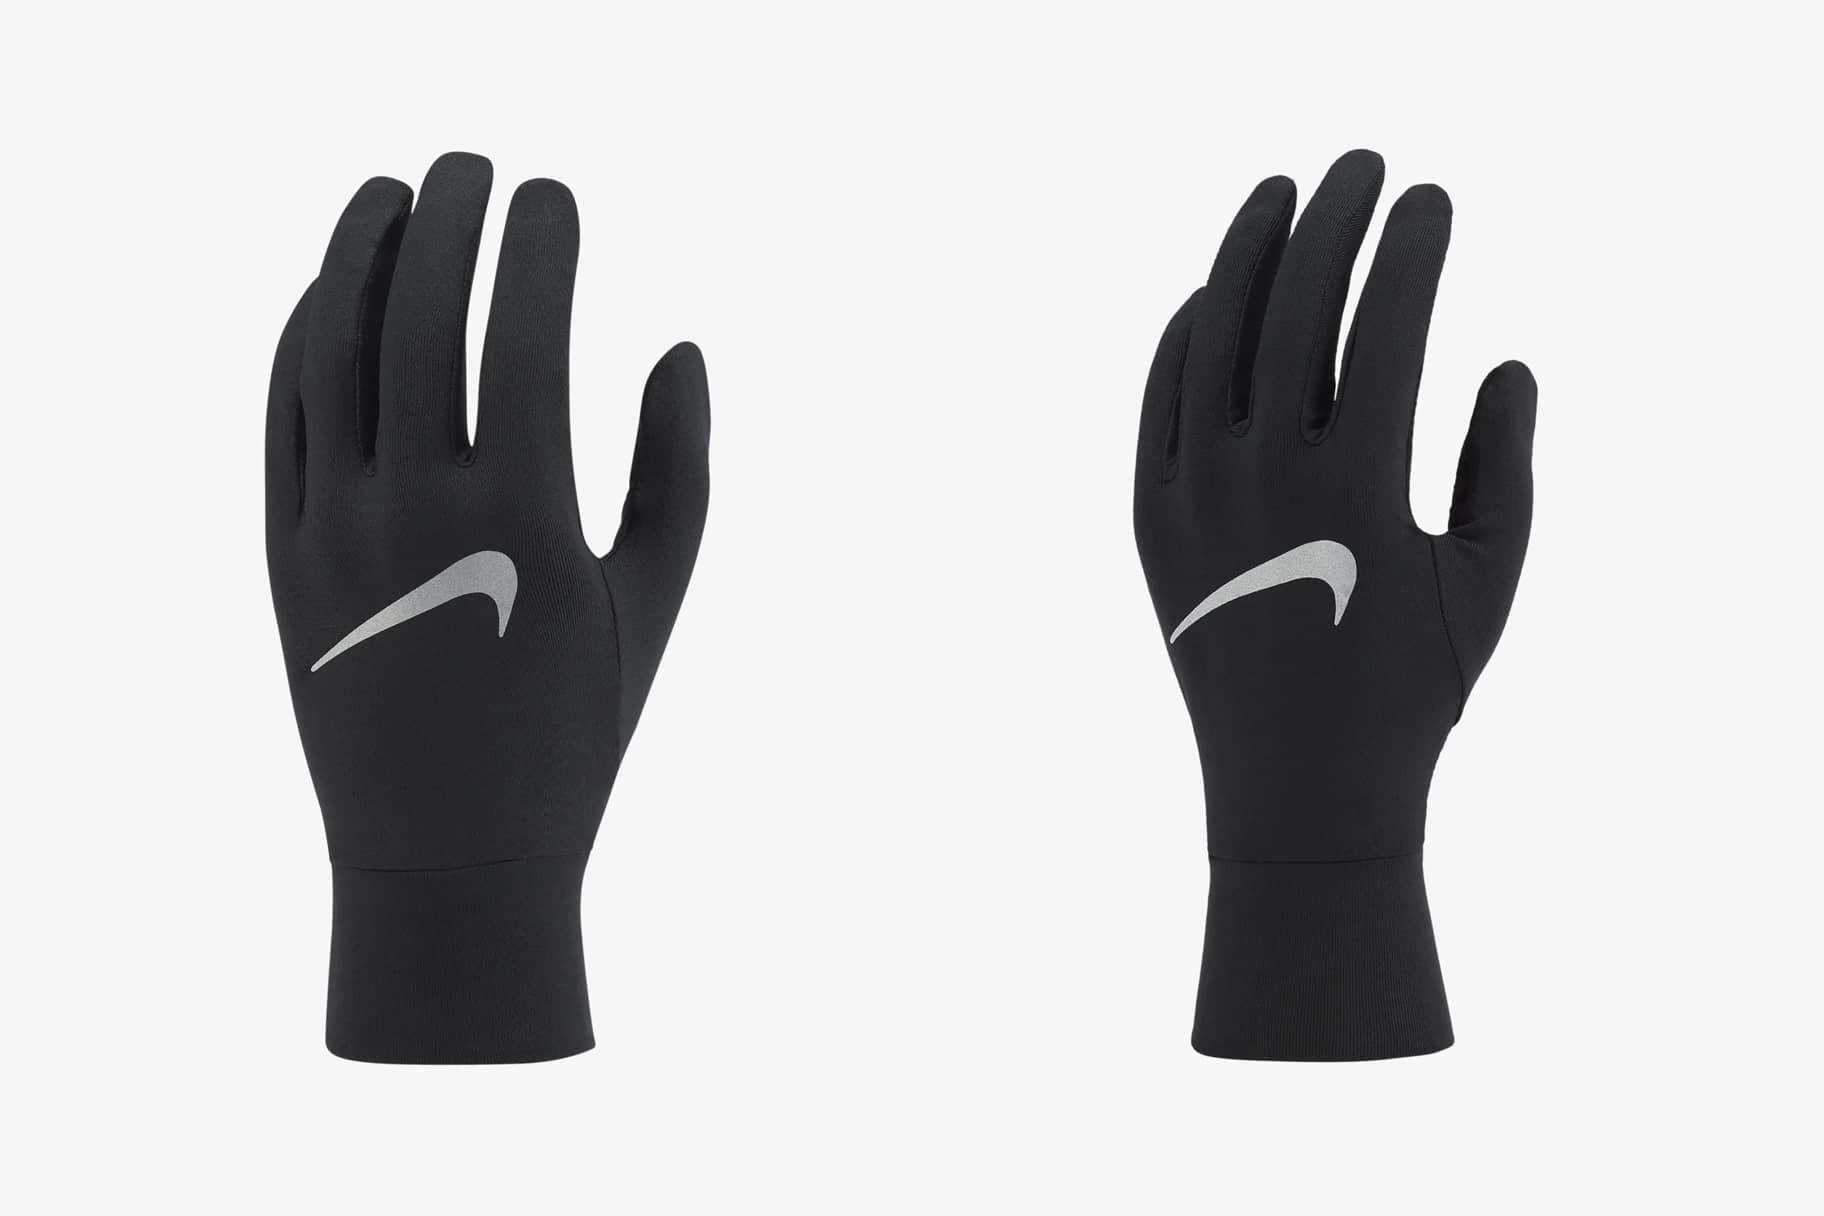 Uitroepteken verkorten Raffinaderij De vijf beste hardloophandschoenen die je bij Nike kunt kopen. Nike NL